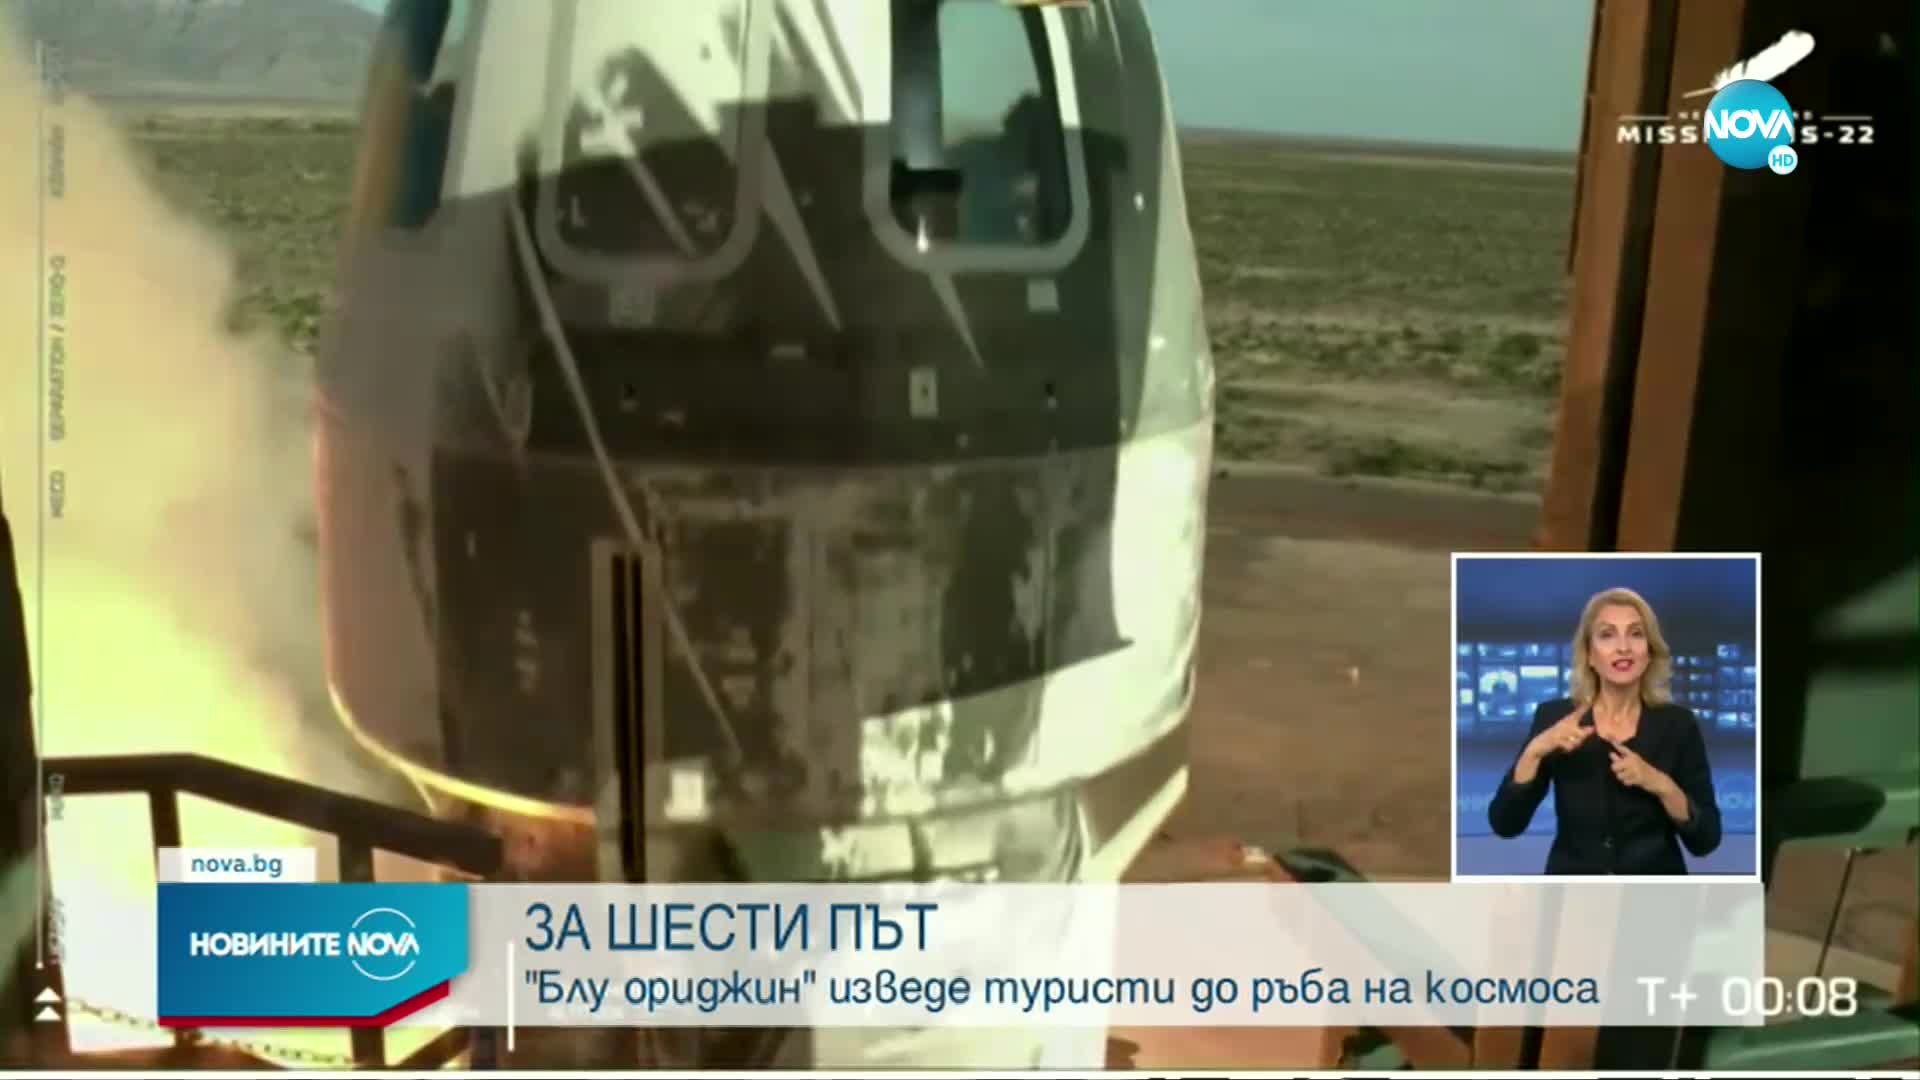 "Блу ориджин" изведе туристи до ръба на космоса за шести път (ВИДЕО)